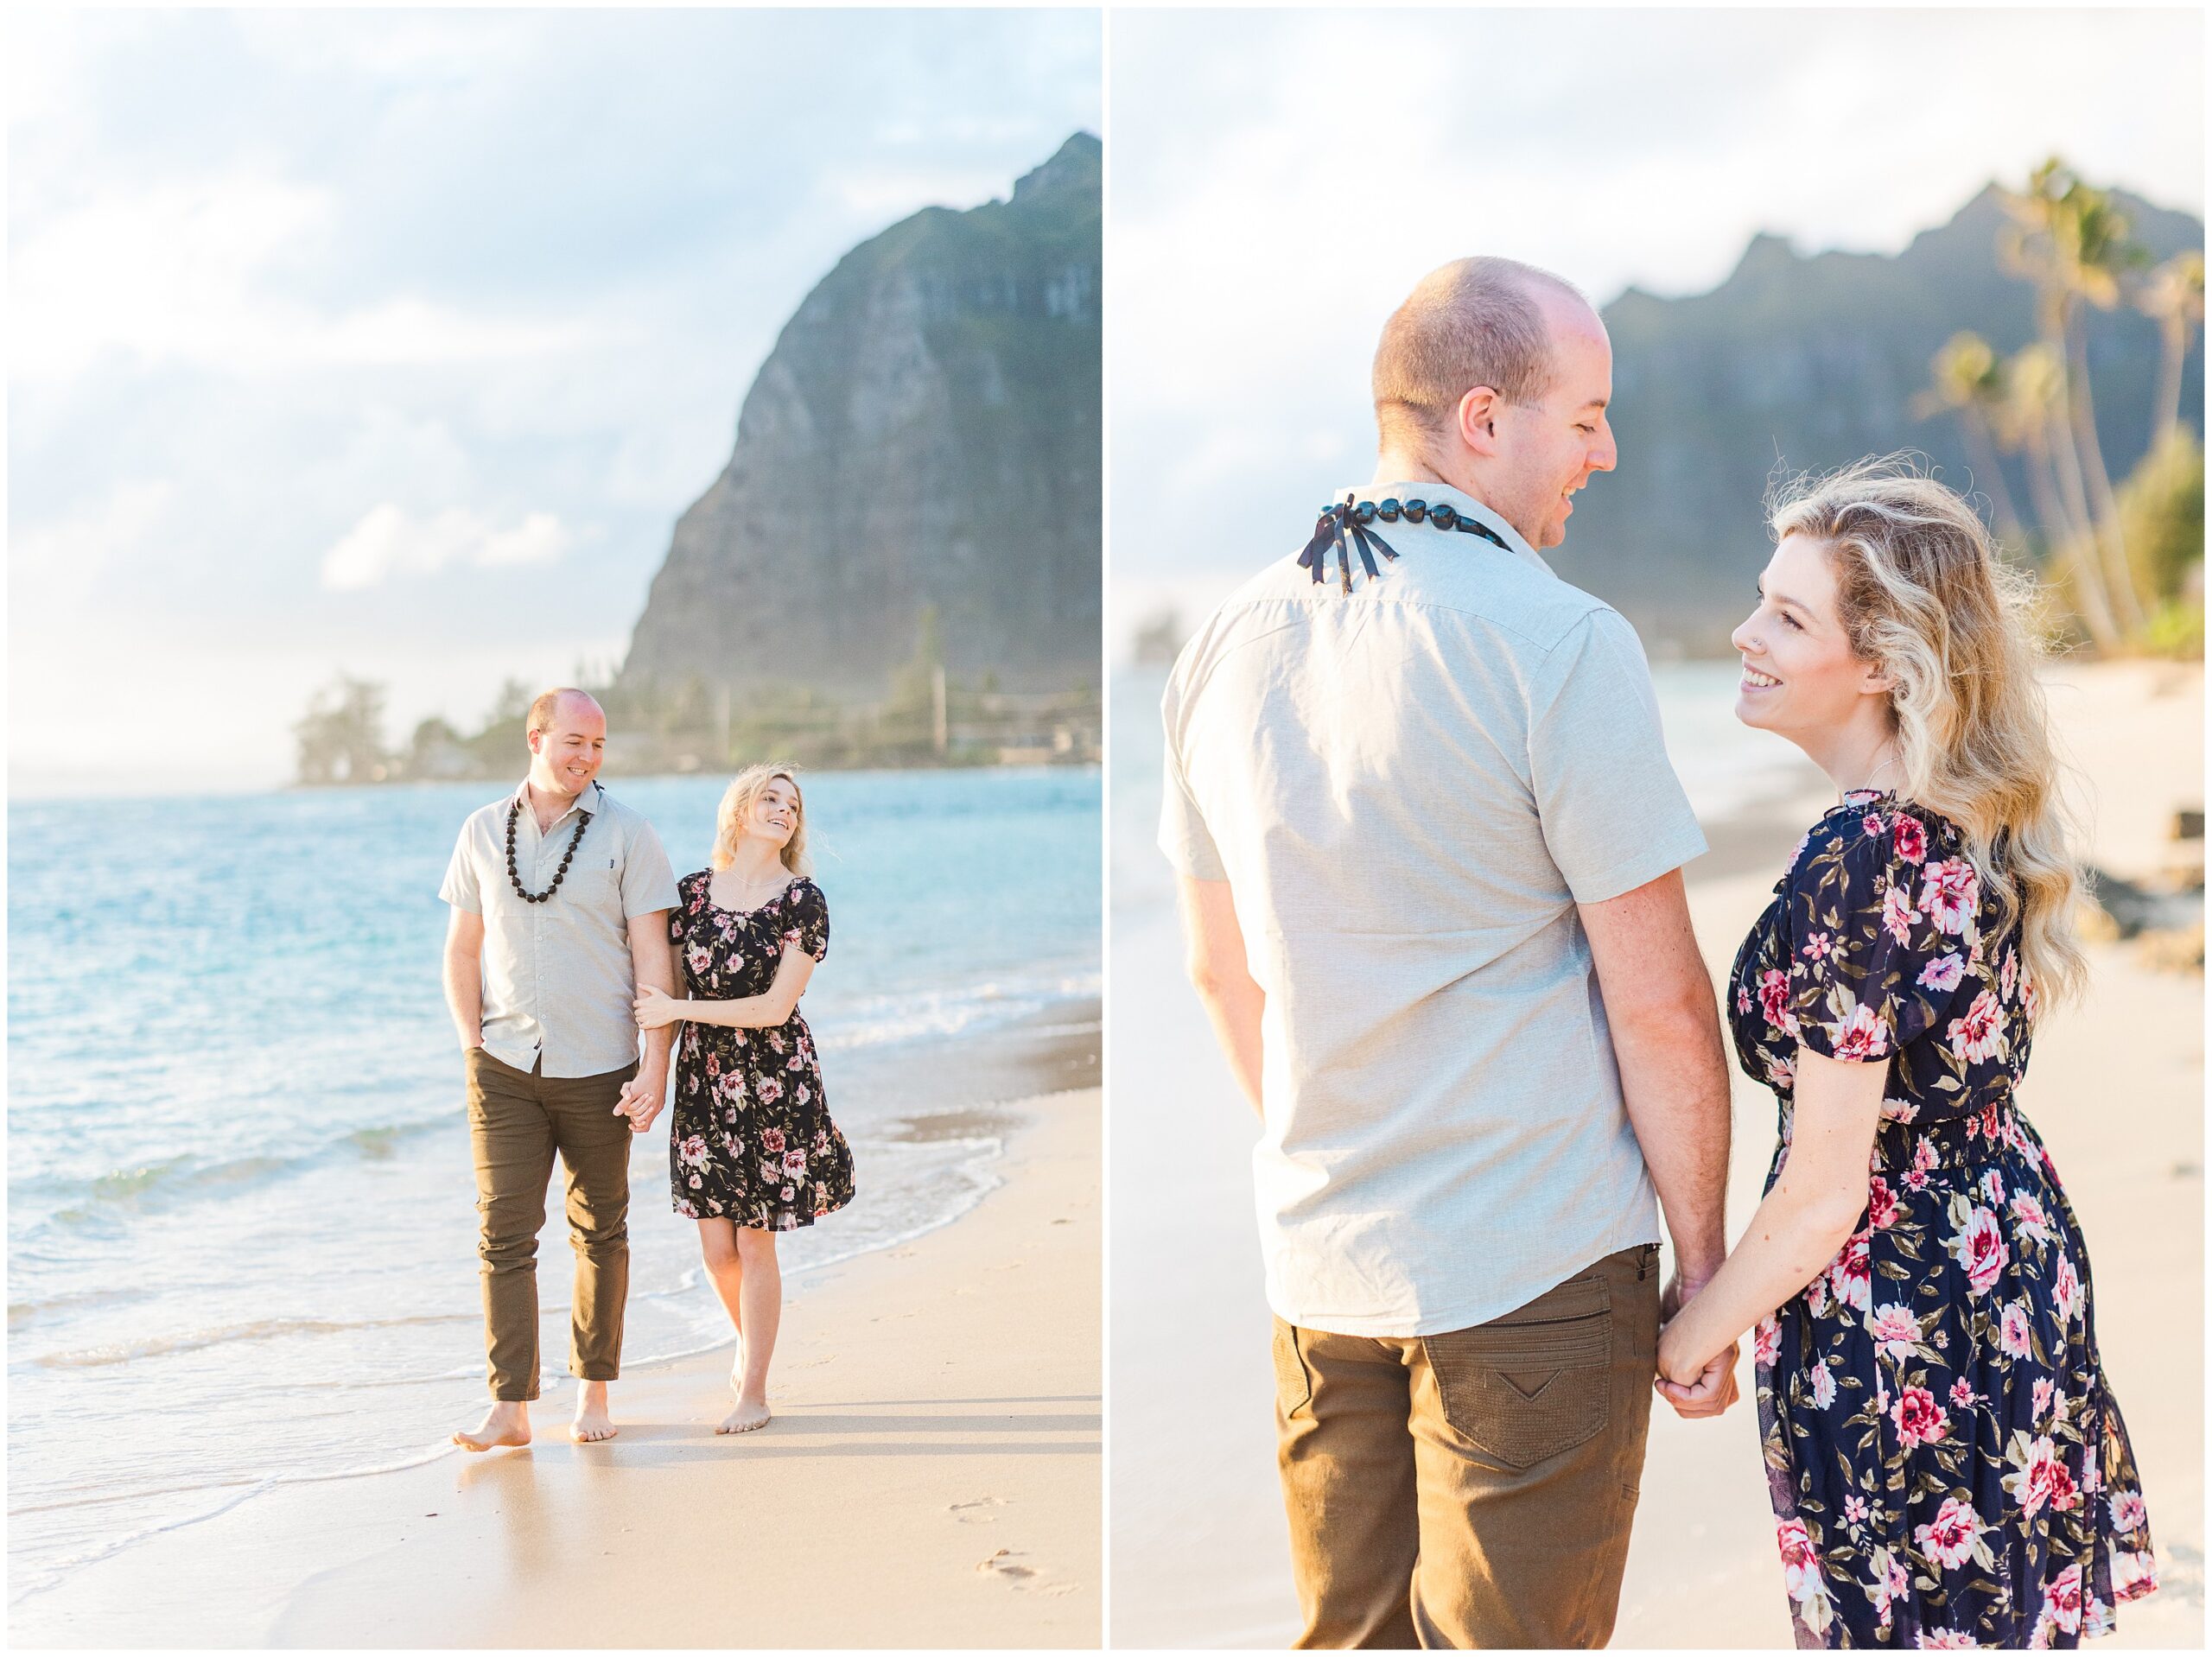 Engagement photos at Ka'a'a'wa Beach on Oahu